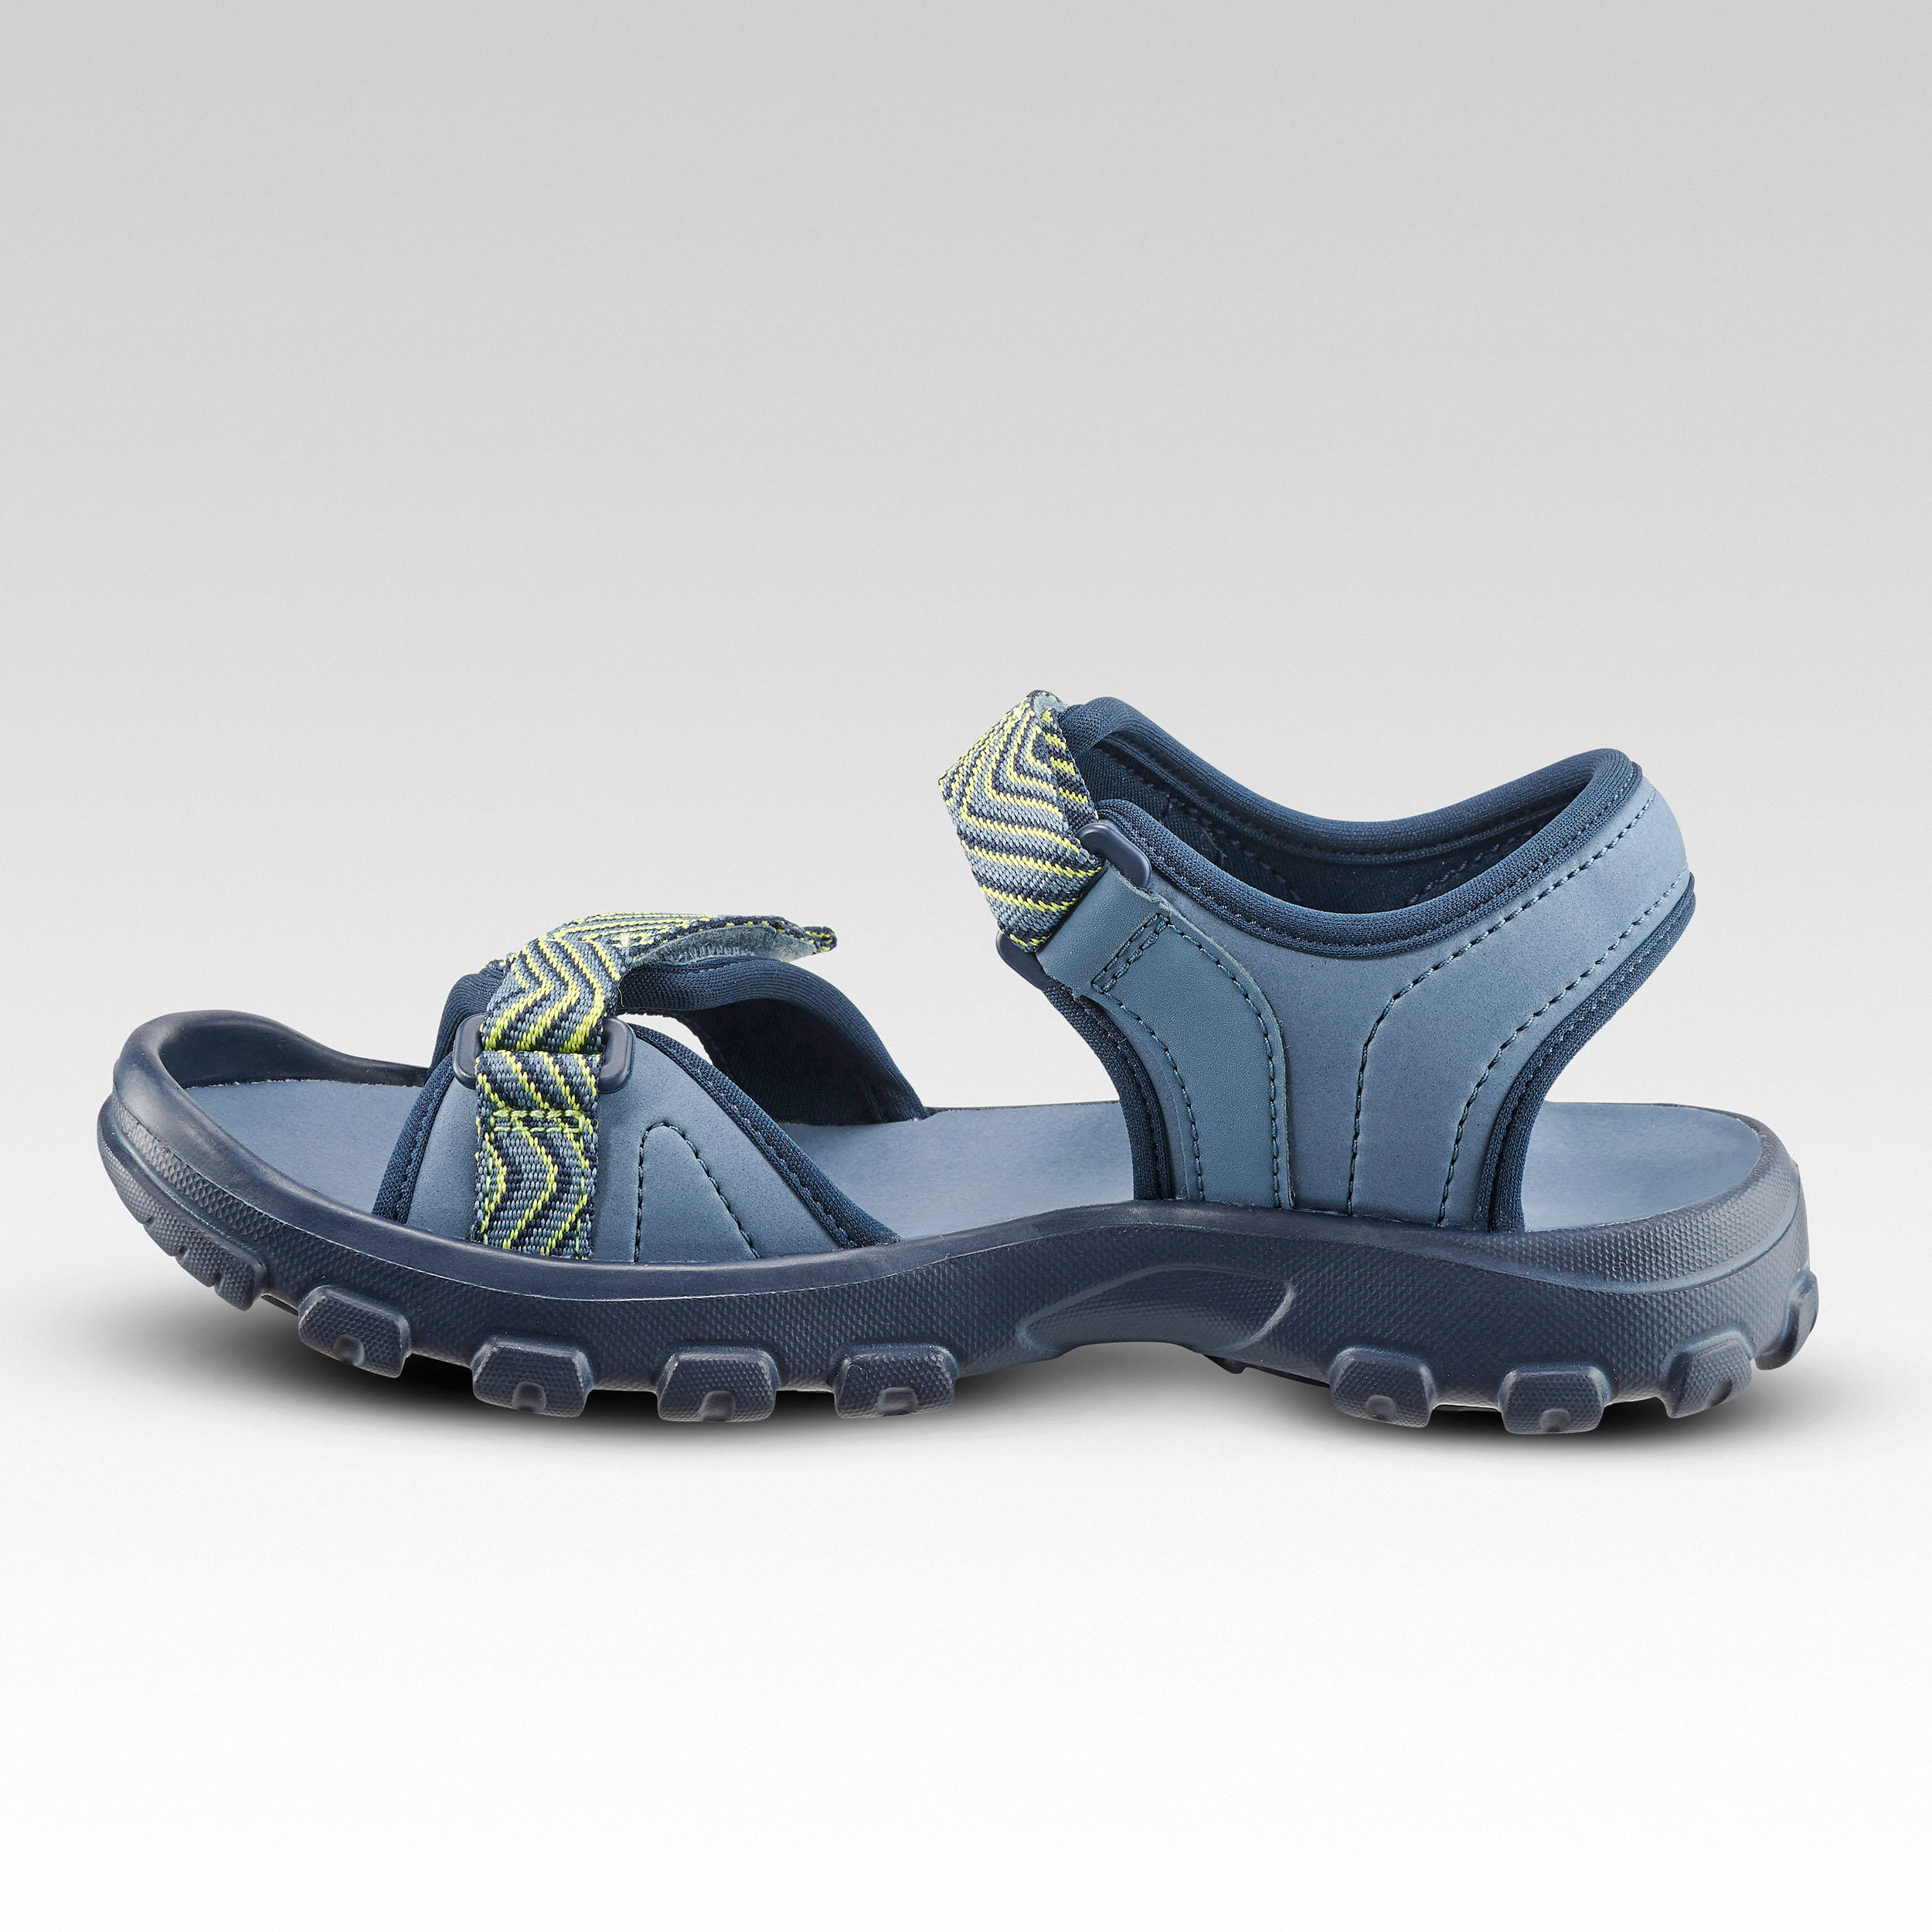 Sandales de randonnée enfant – MH 100 - QUECHUA